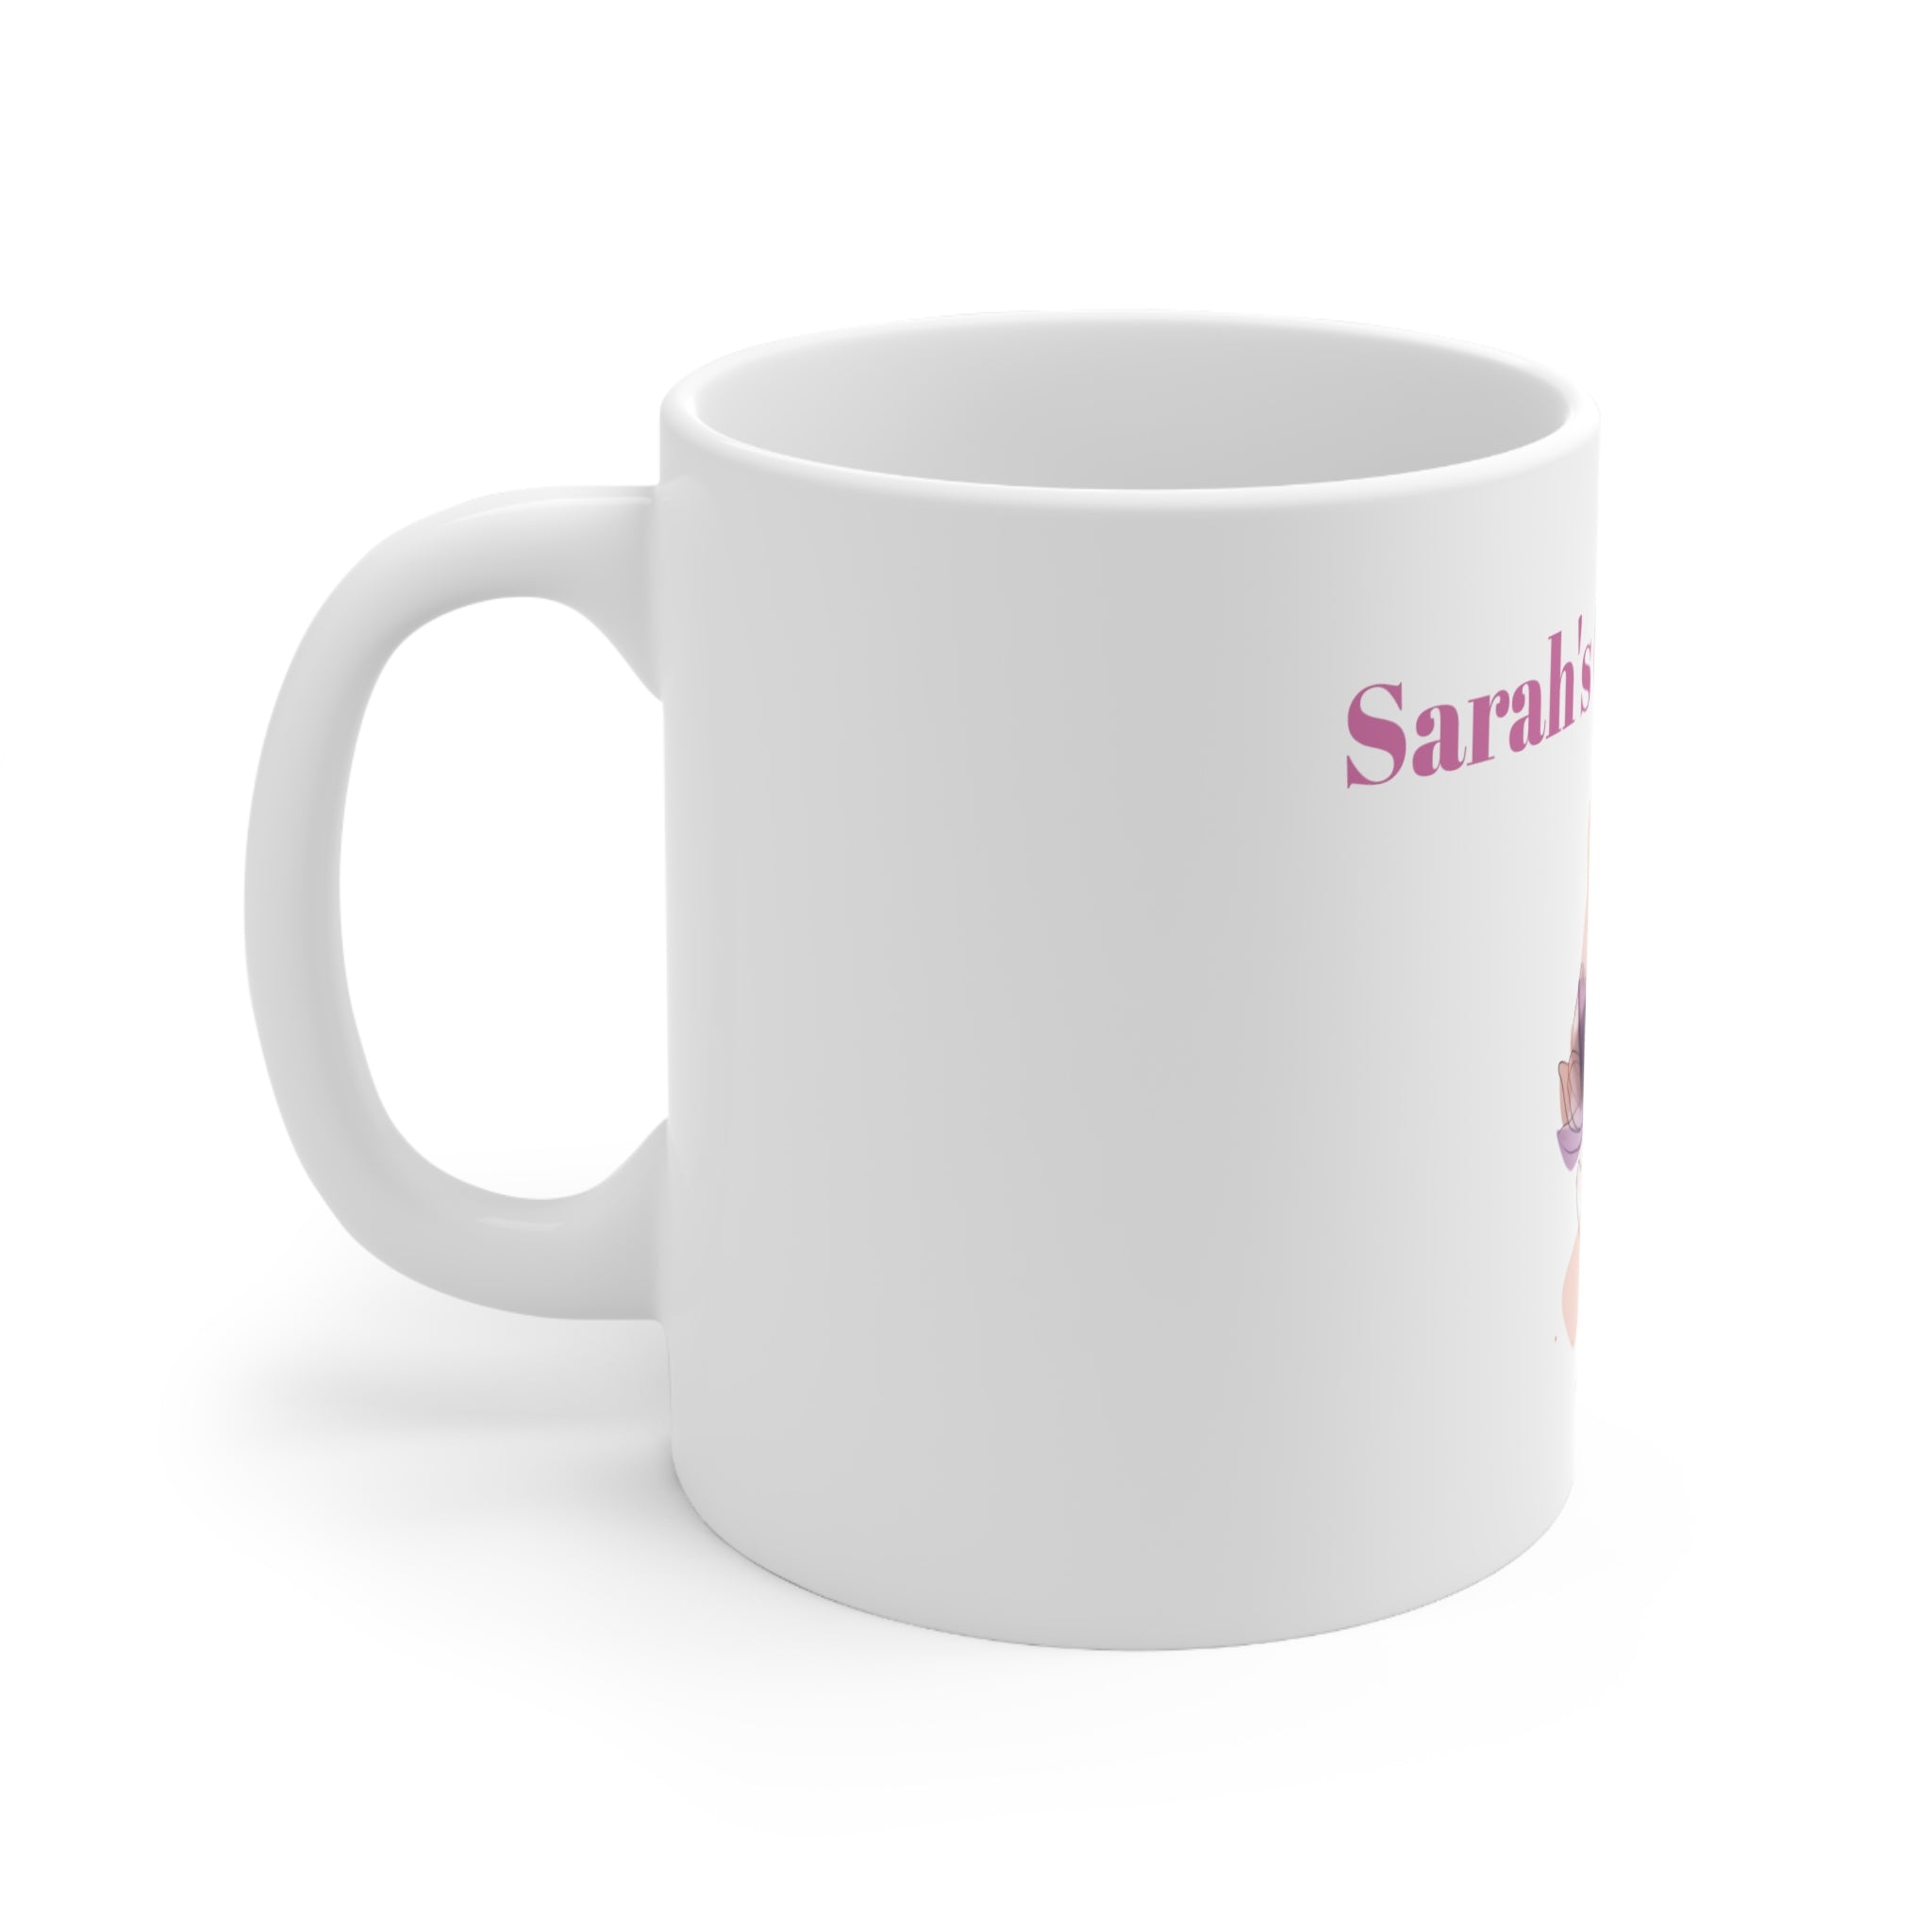 Sarah's Abstract floral, coffee mug, ceramic mug, flower design, handmade mug, unique gift for Sarah